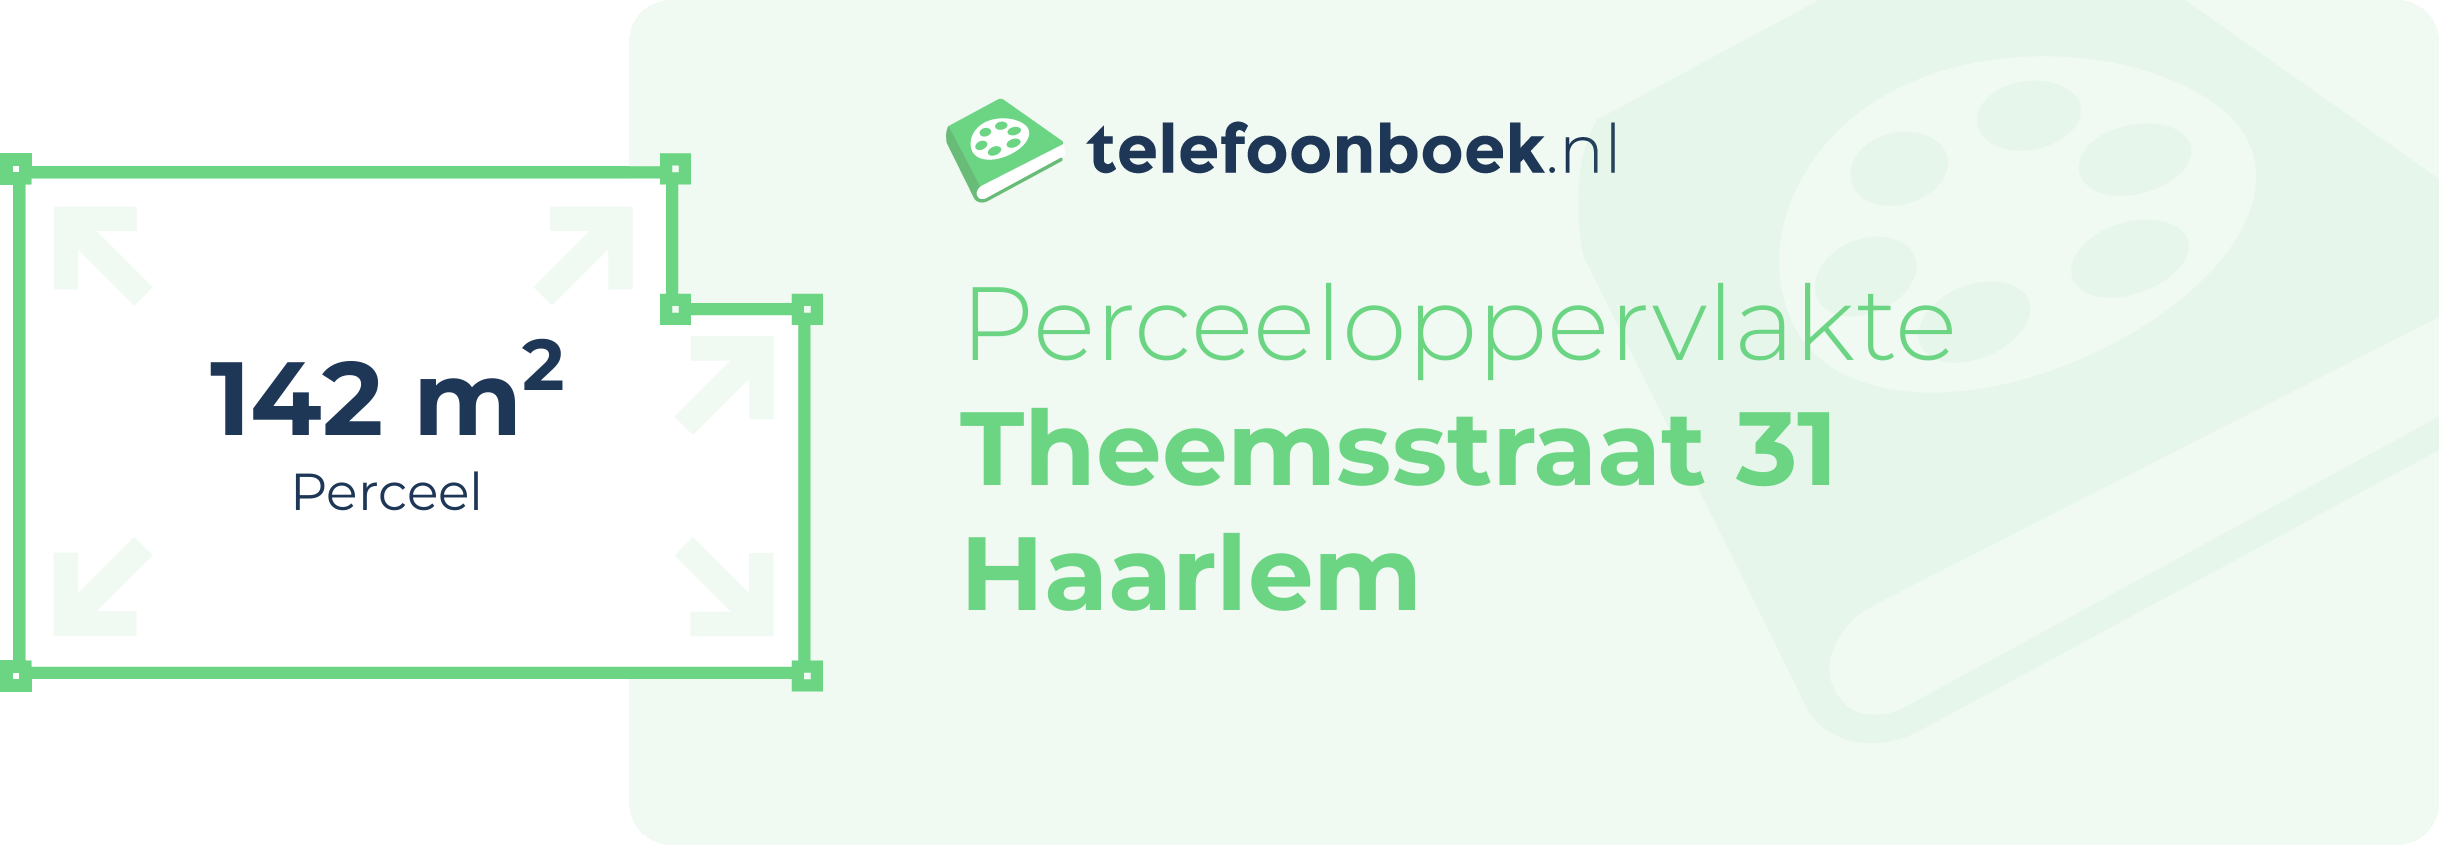 Perceeloppervlakte Theemsstraat 31 Haarlem